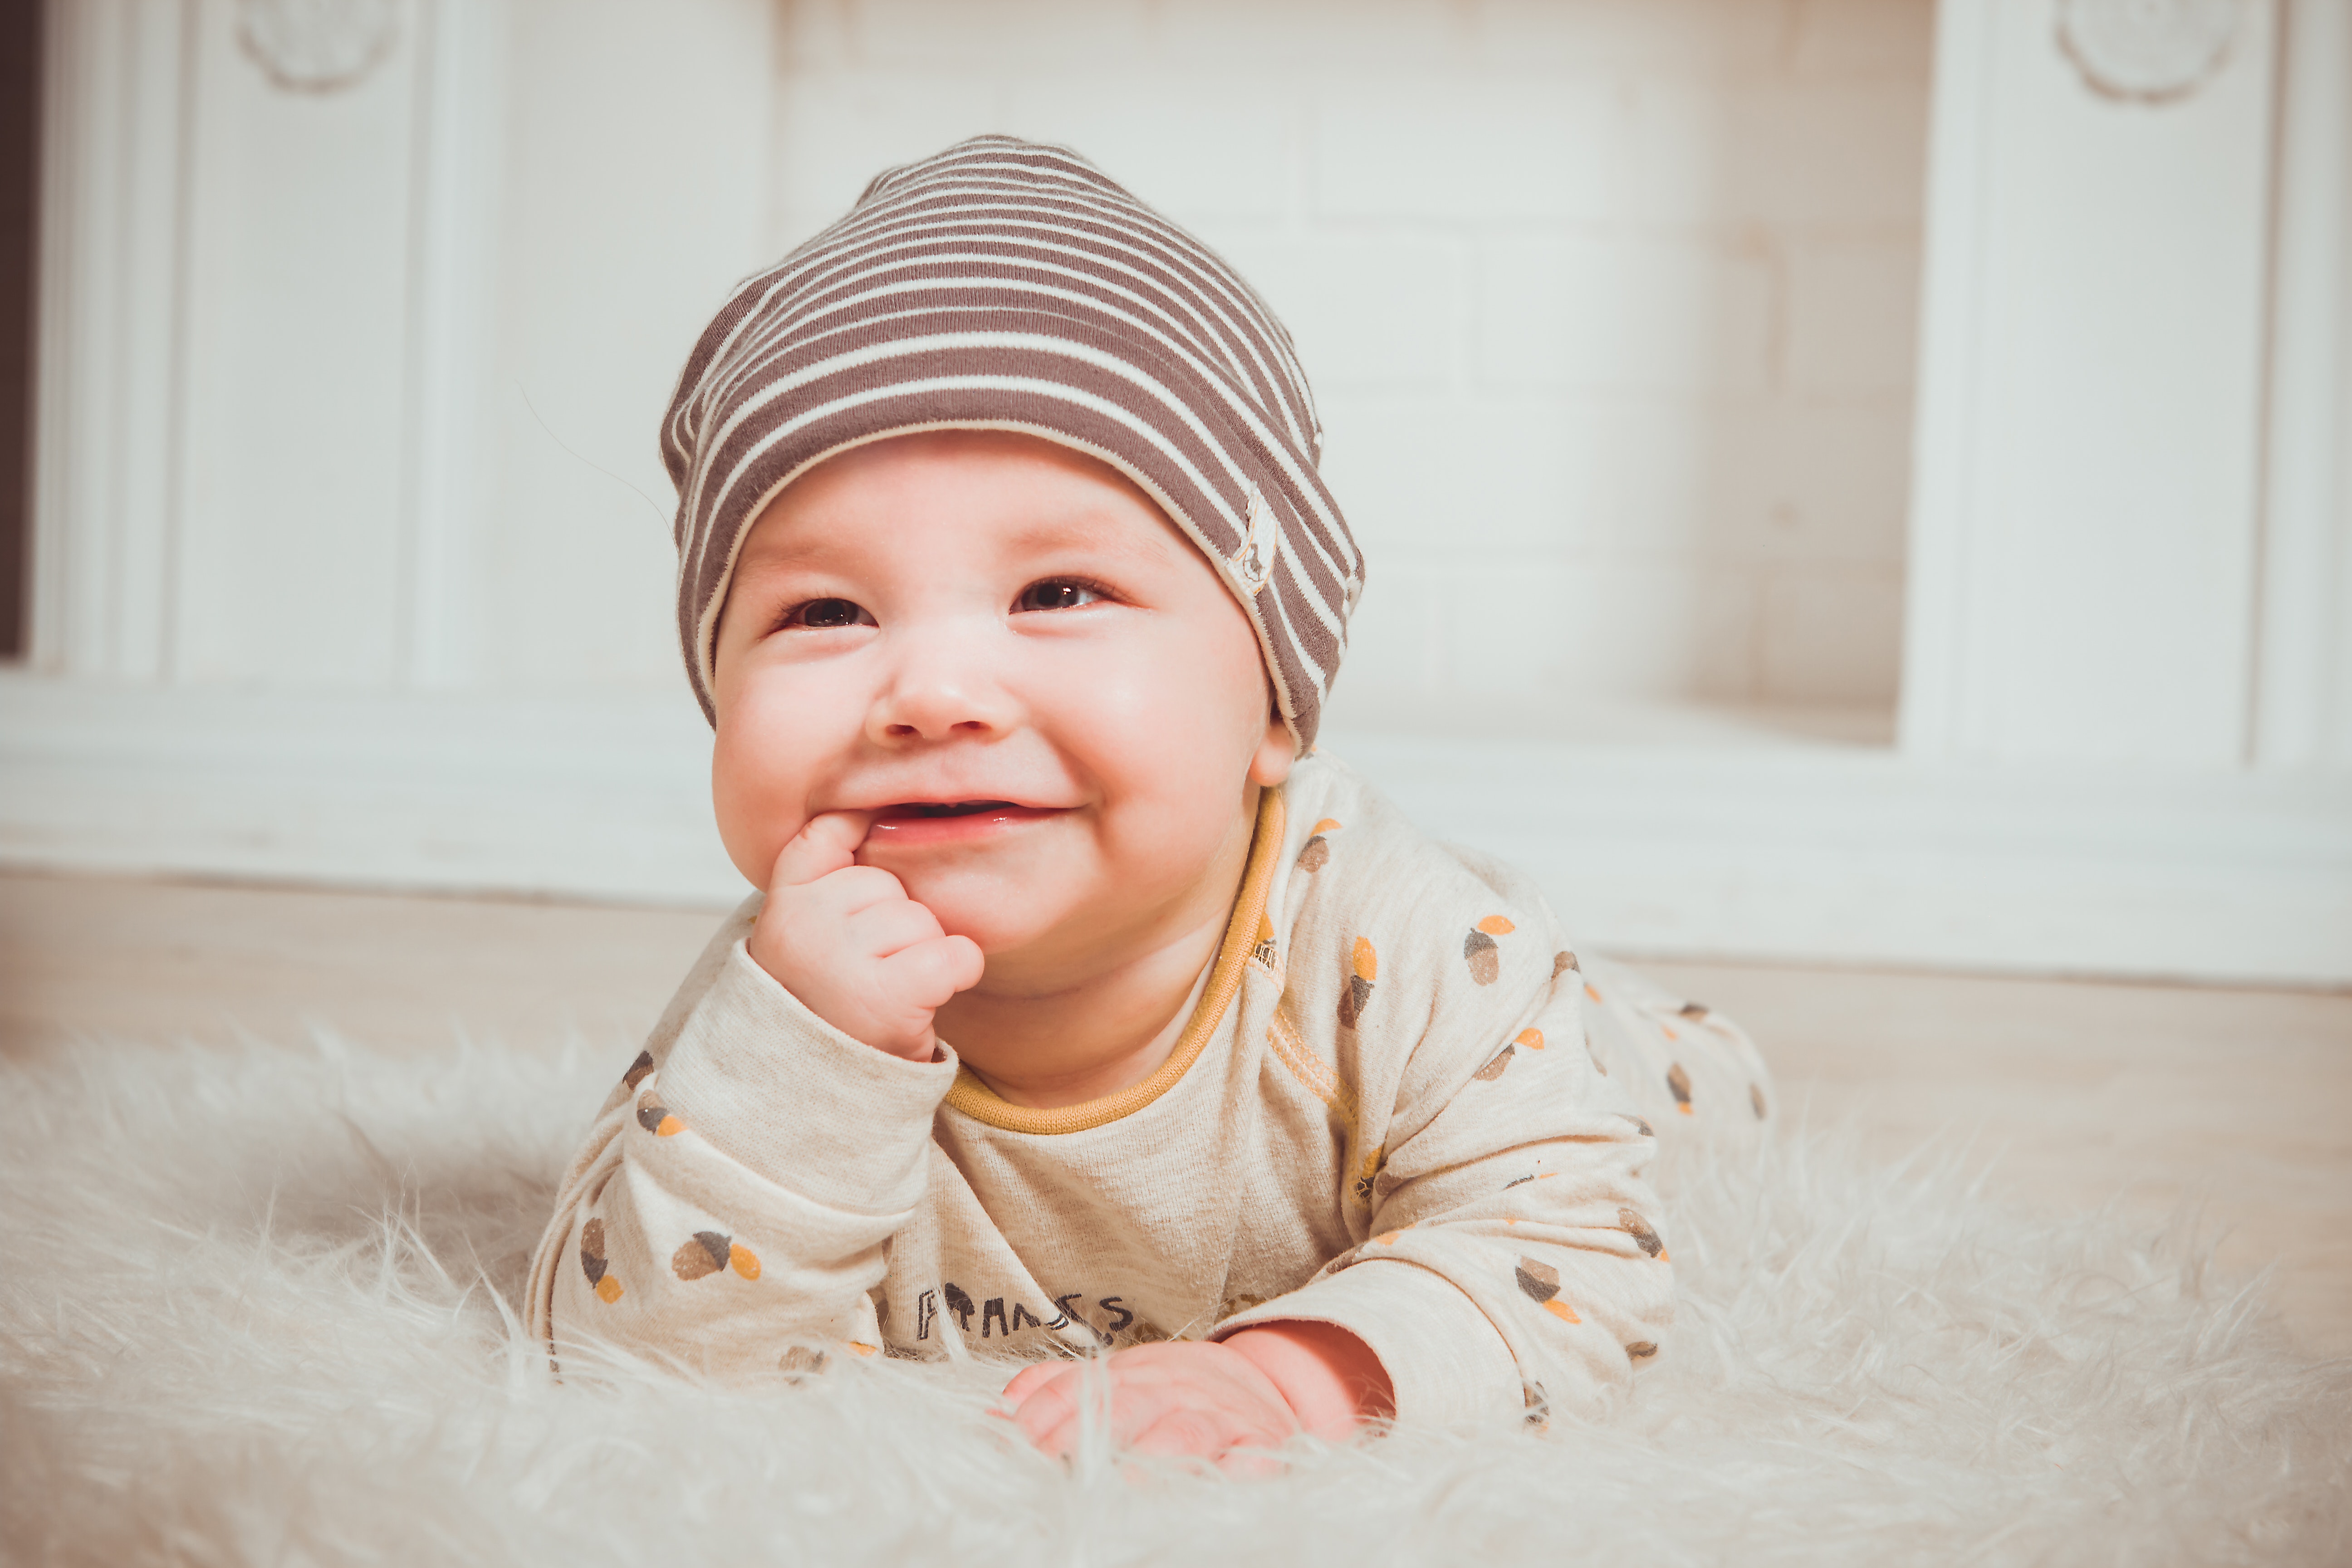 You are currently viewing Sinais de boa nutrição em bebês: você sabe identificar?